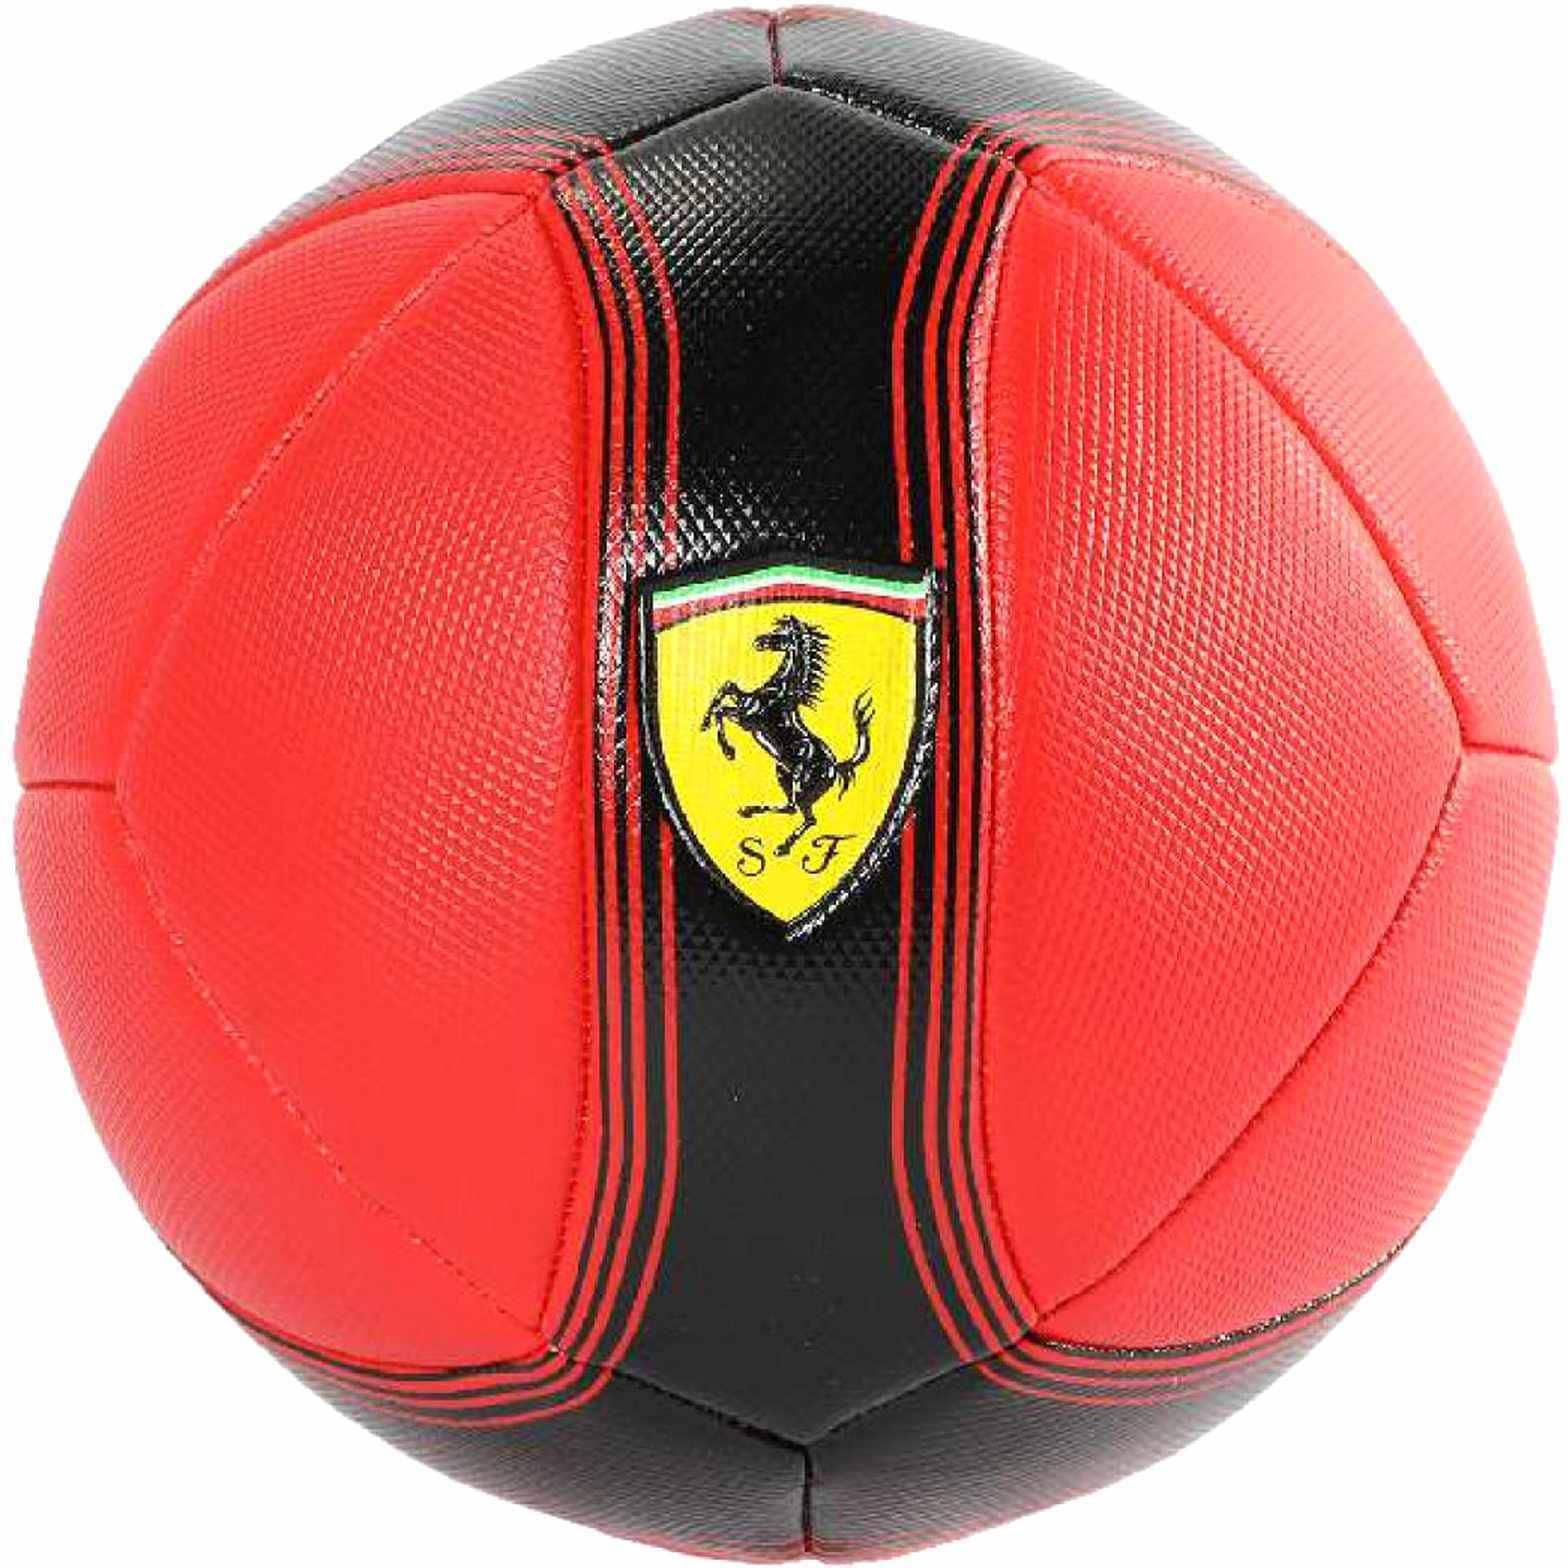 Scuderia Ferrari Football Red Size 5